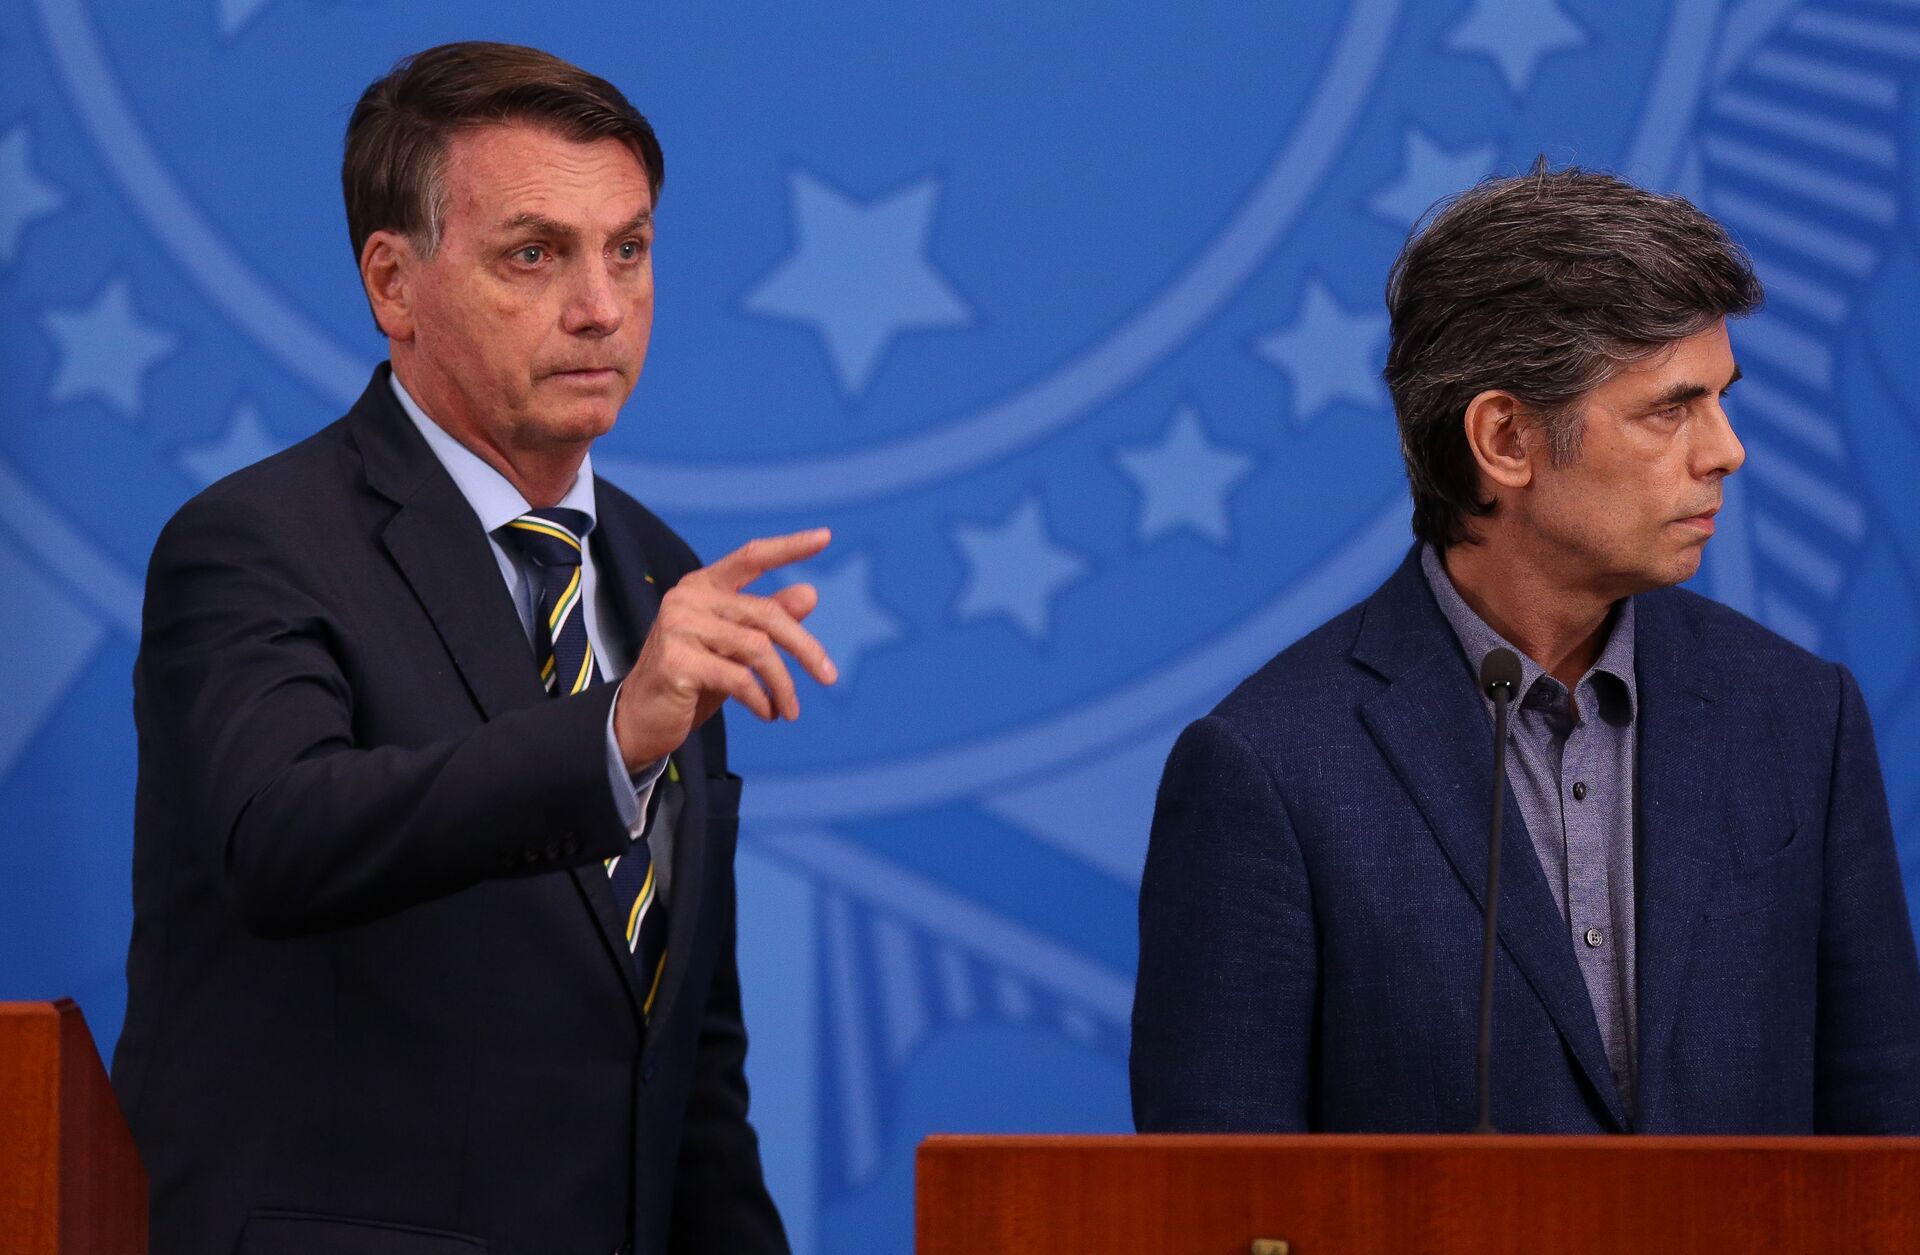 Teich diz que pediu demissão por governo Bolsonaro insistir na 'ampliação do uso da cloroquina' - Sputnik Brasil, 1920, 05.05.2021